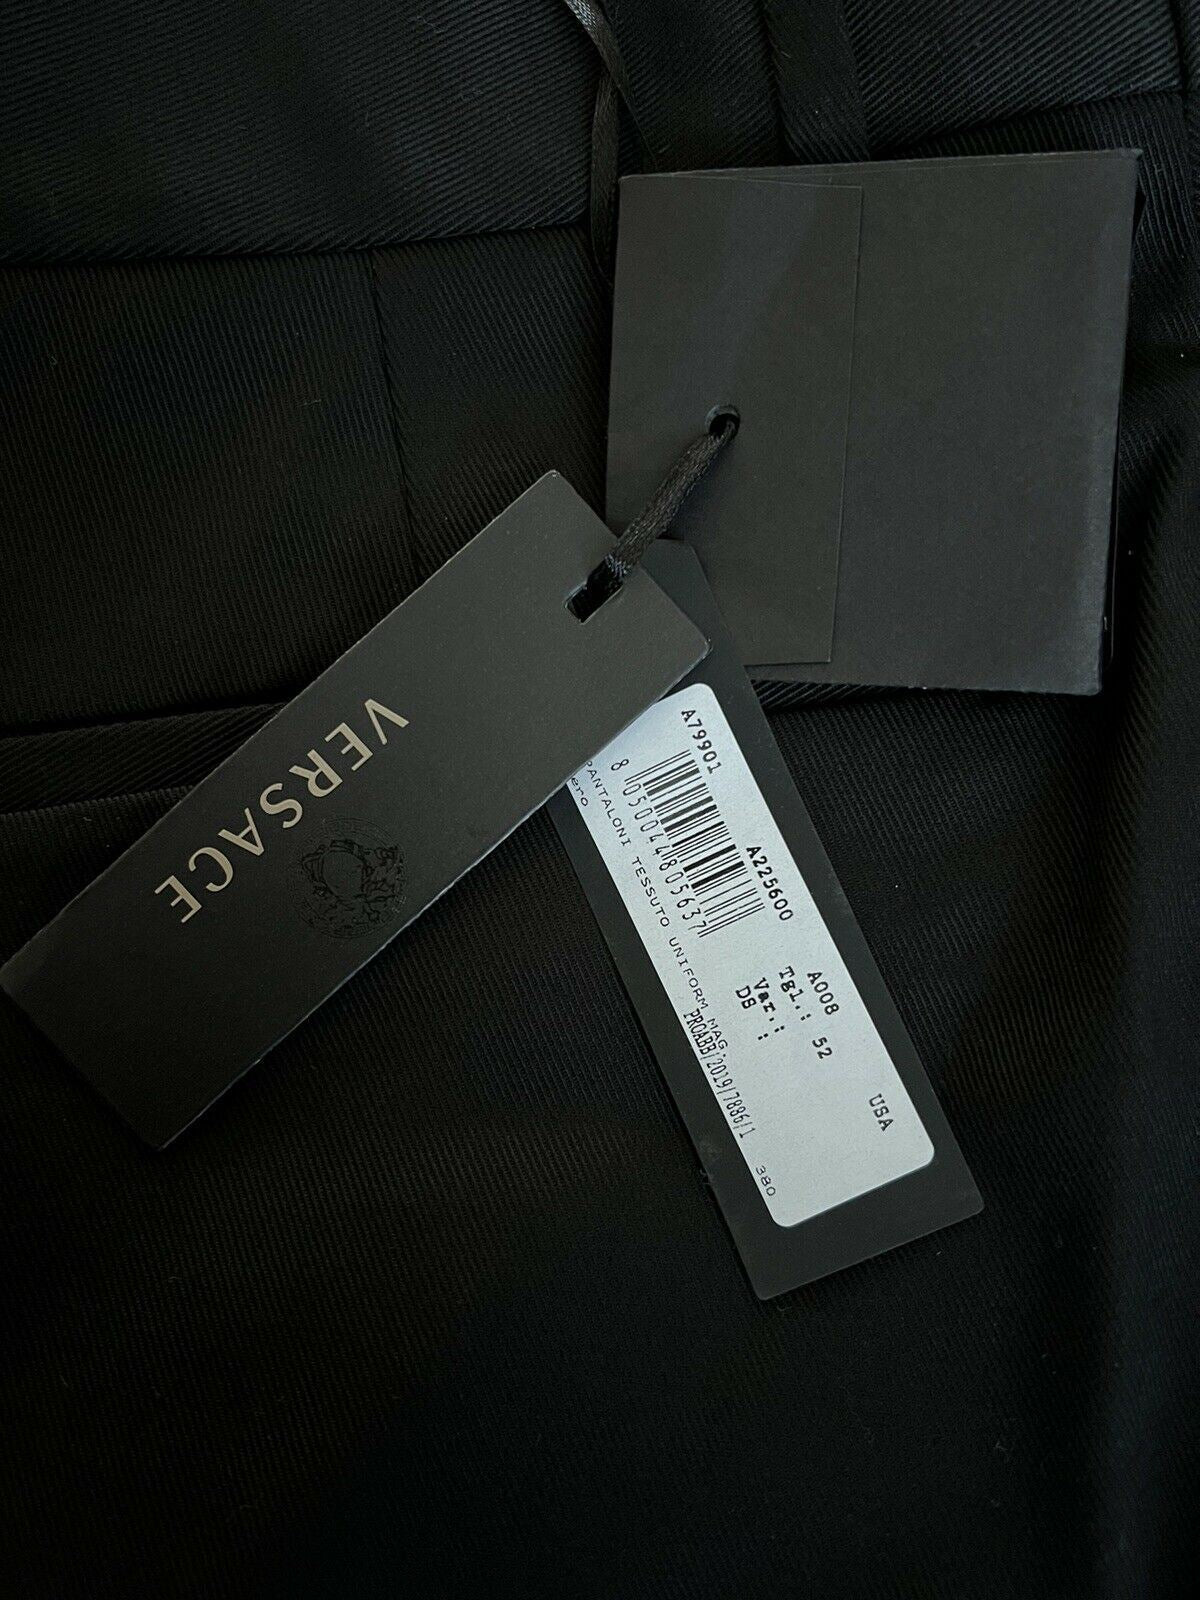 Neu mit Etikett: 550 $ Versace Herren-Hose in Schwarz, 36 US (52 Euro), hergestellt in Italien A79901